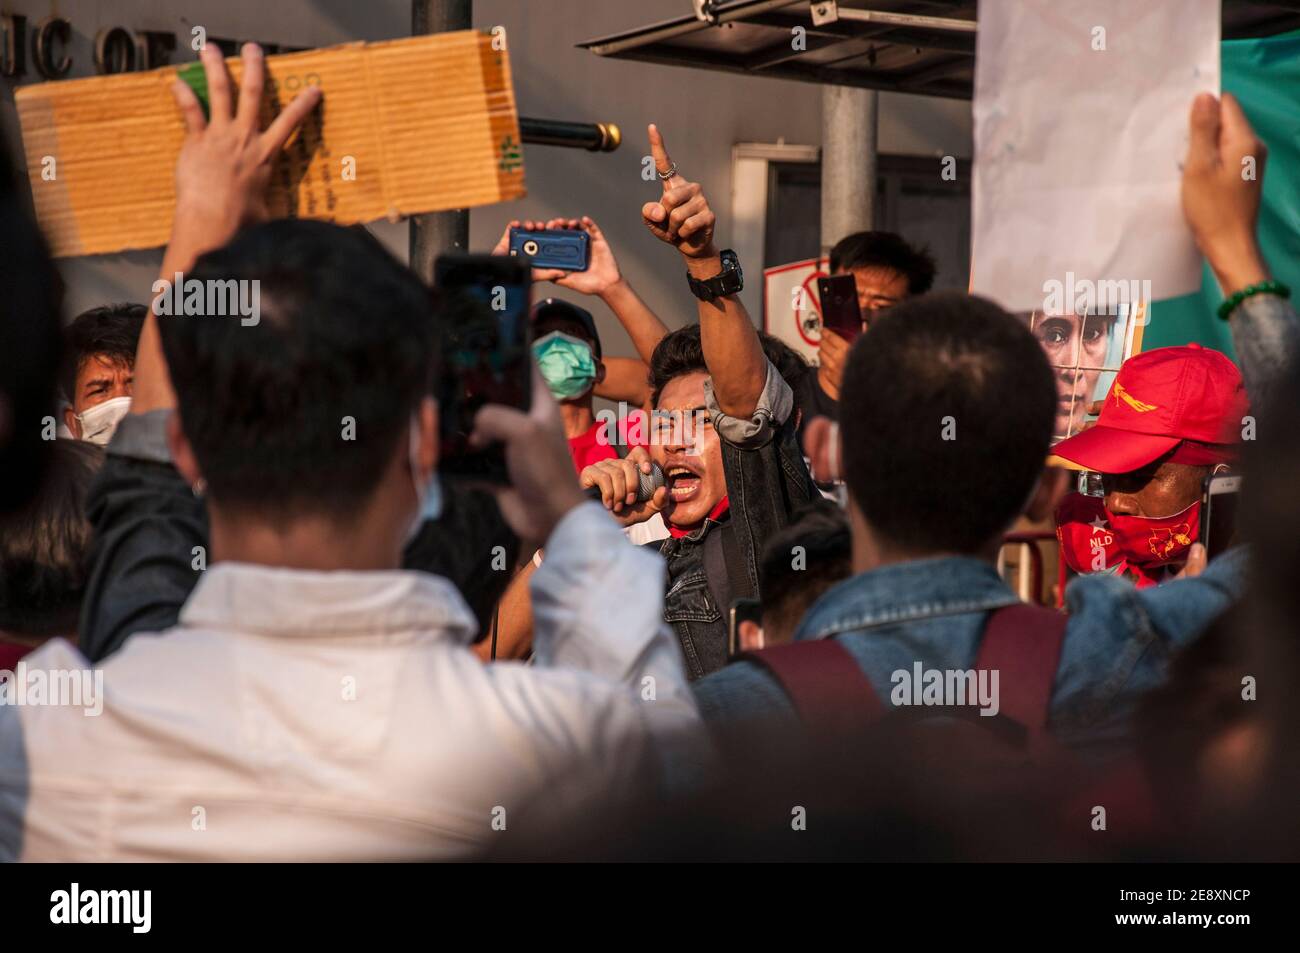 Il sostenitore della NLD grida slogan attraverso un microfono durante la dimostrazione.i sostenitori della Lega nazionale per la democrazia (NLD) e i manifestanti anti anti-colpo thailandesi si radunano fuori dall'ambasciata del Myanmar dopo che l'esercito del Myanmar ha preso il potere da un governo civile democraticamente eletto e ha arrestato il suo leader Aung San Suu Kyi. La polizia tailandese in rivolta ha poi disperso i dimostranti. Foto Stock